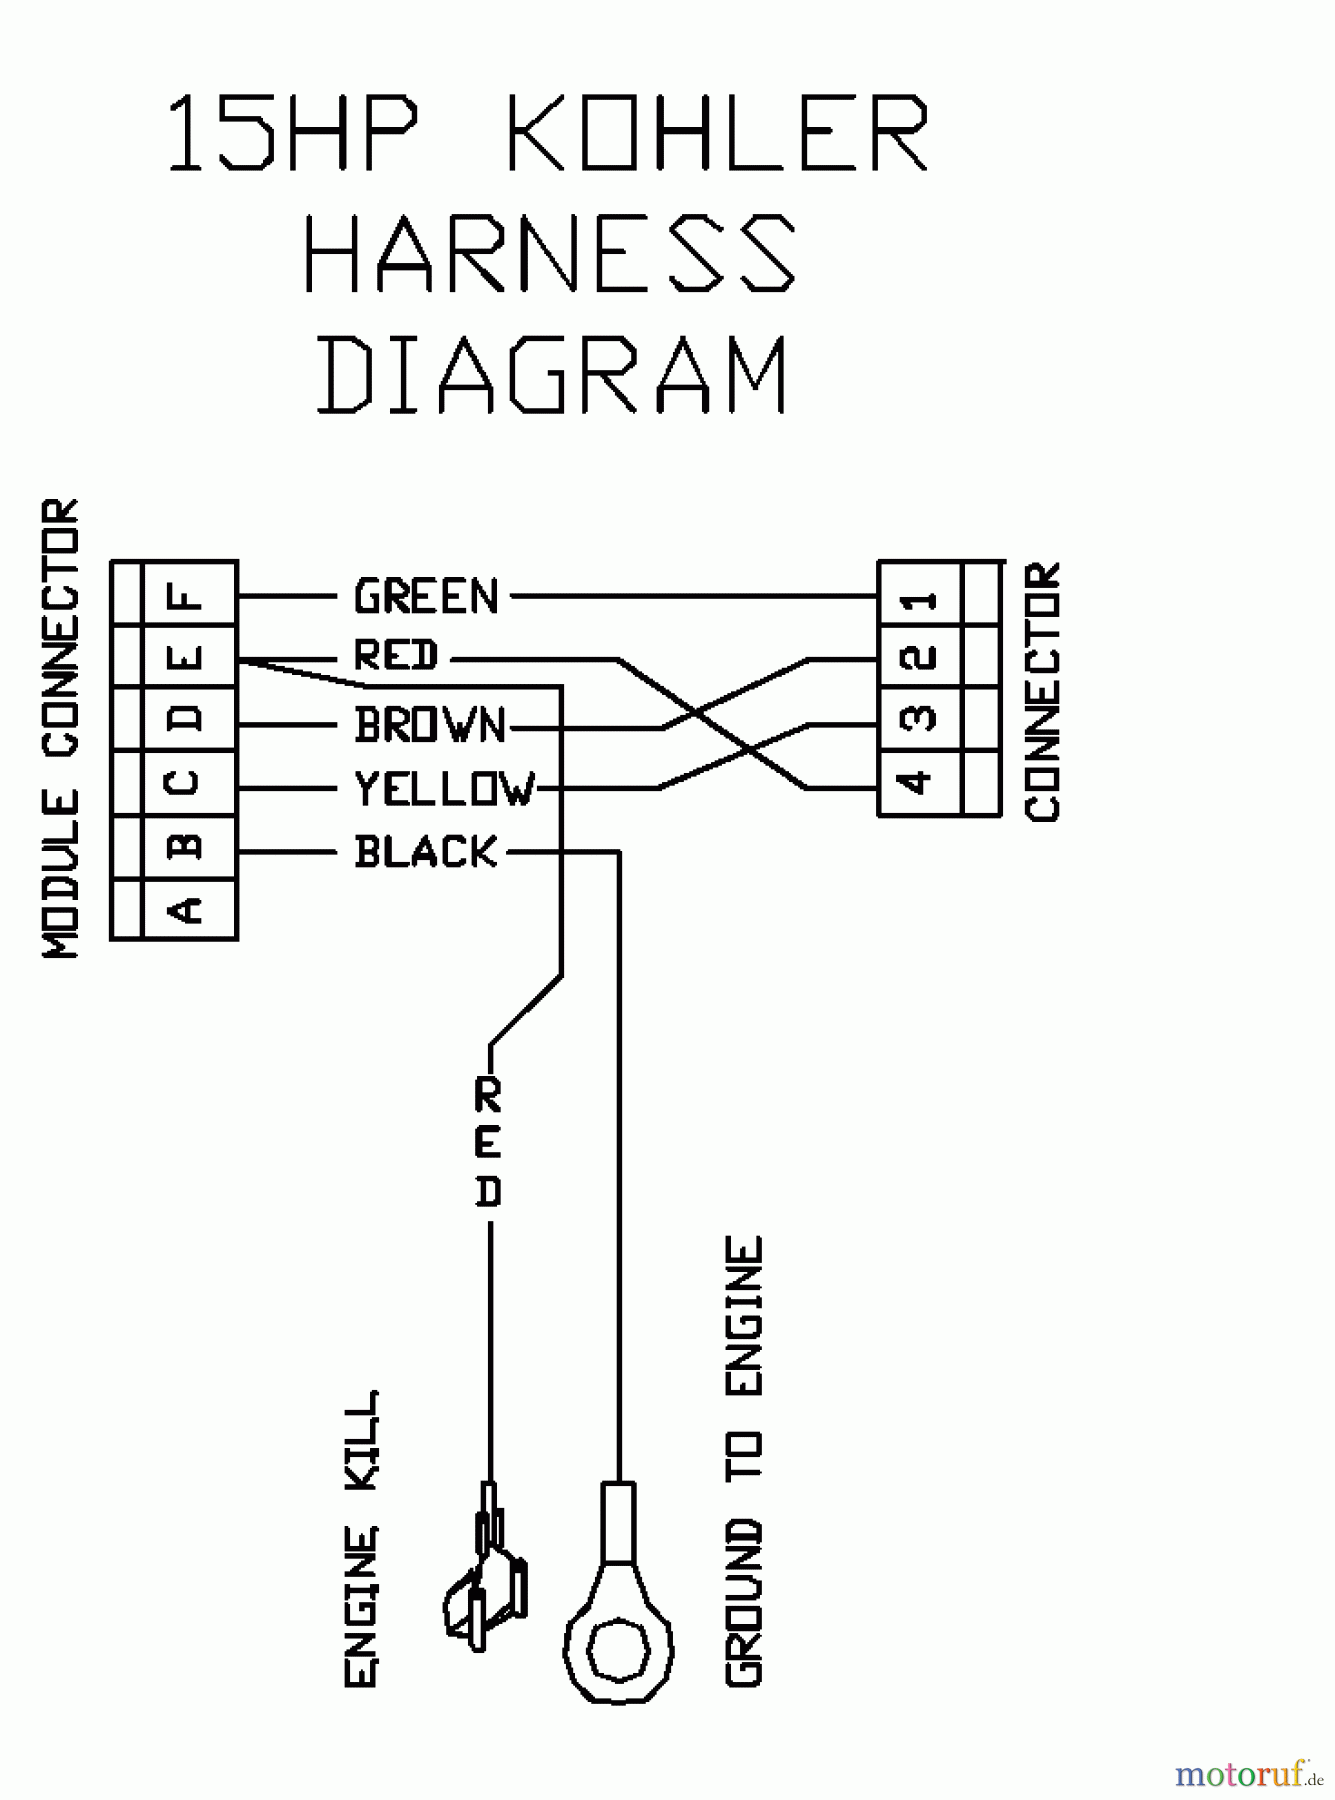  Husqvarna Rasenmäher für Großflächen WH 4817A (968999106) - Husqvarna Wide-Area Walk-Behind Mower (2000-06 to 2001-01) 15 HP Kohler Harness Diagram